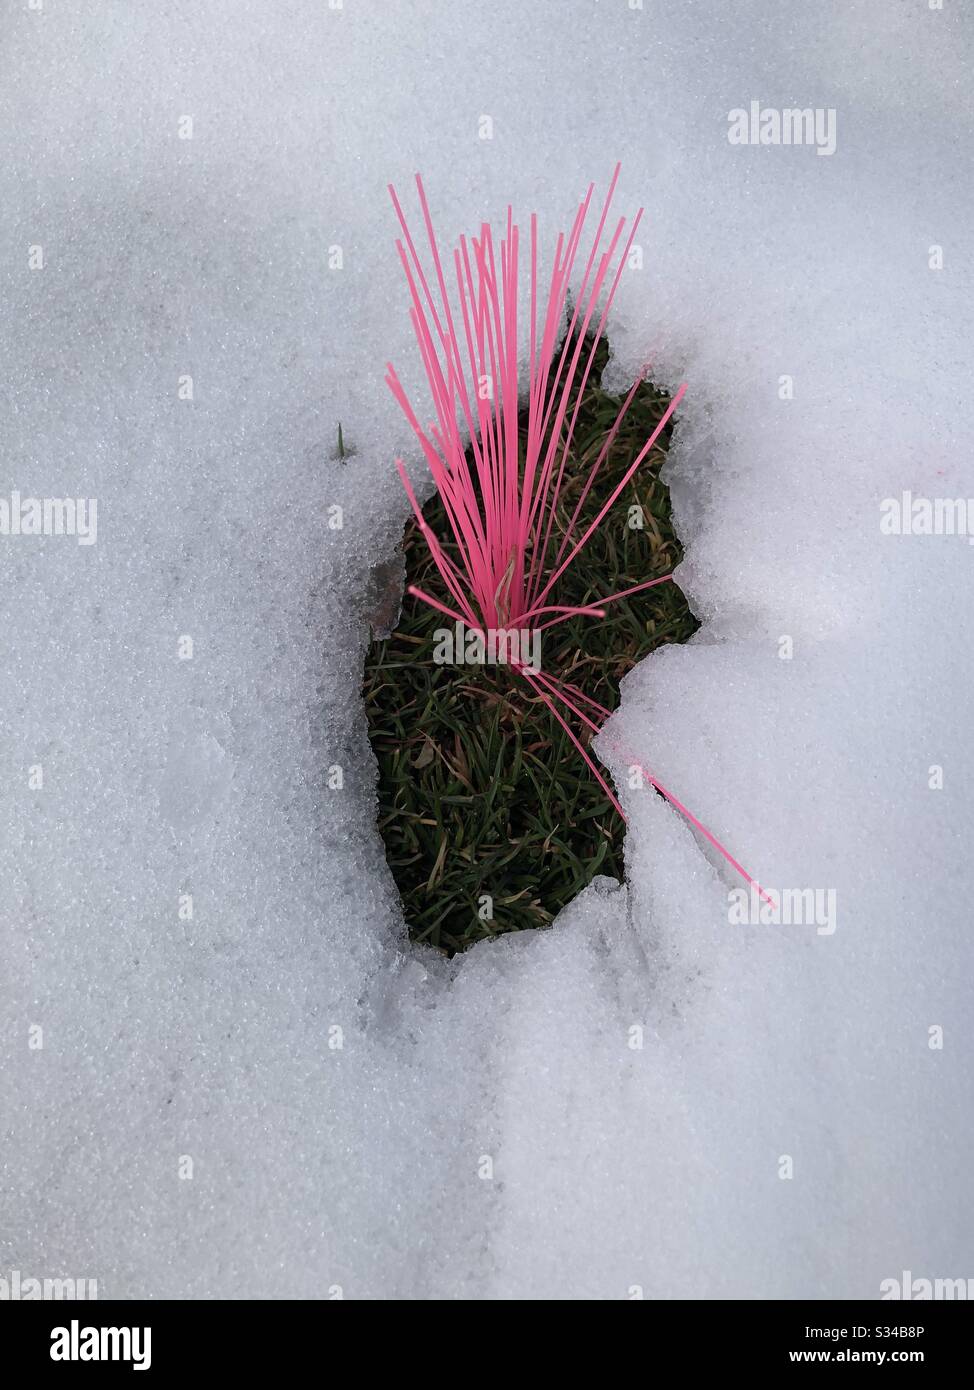 Un susurro de plástico rosado marcado en hierba rodeada de nieve. Foto de stock